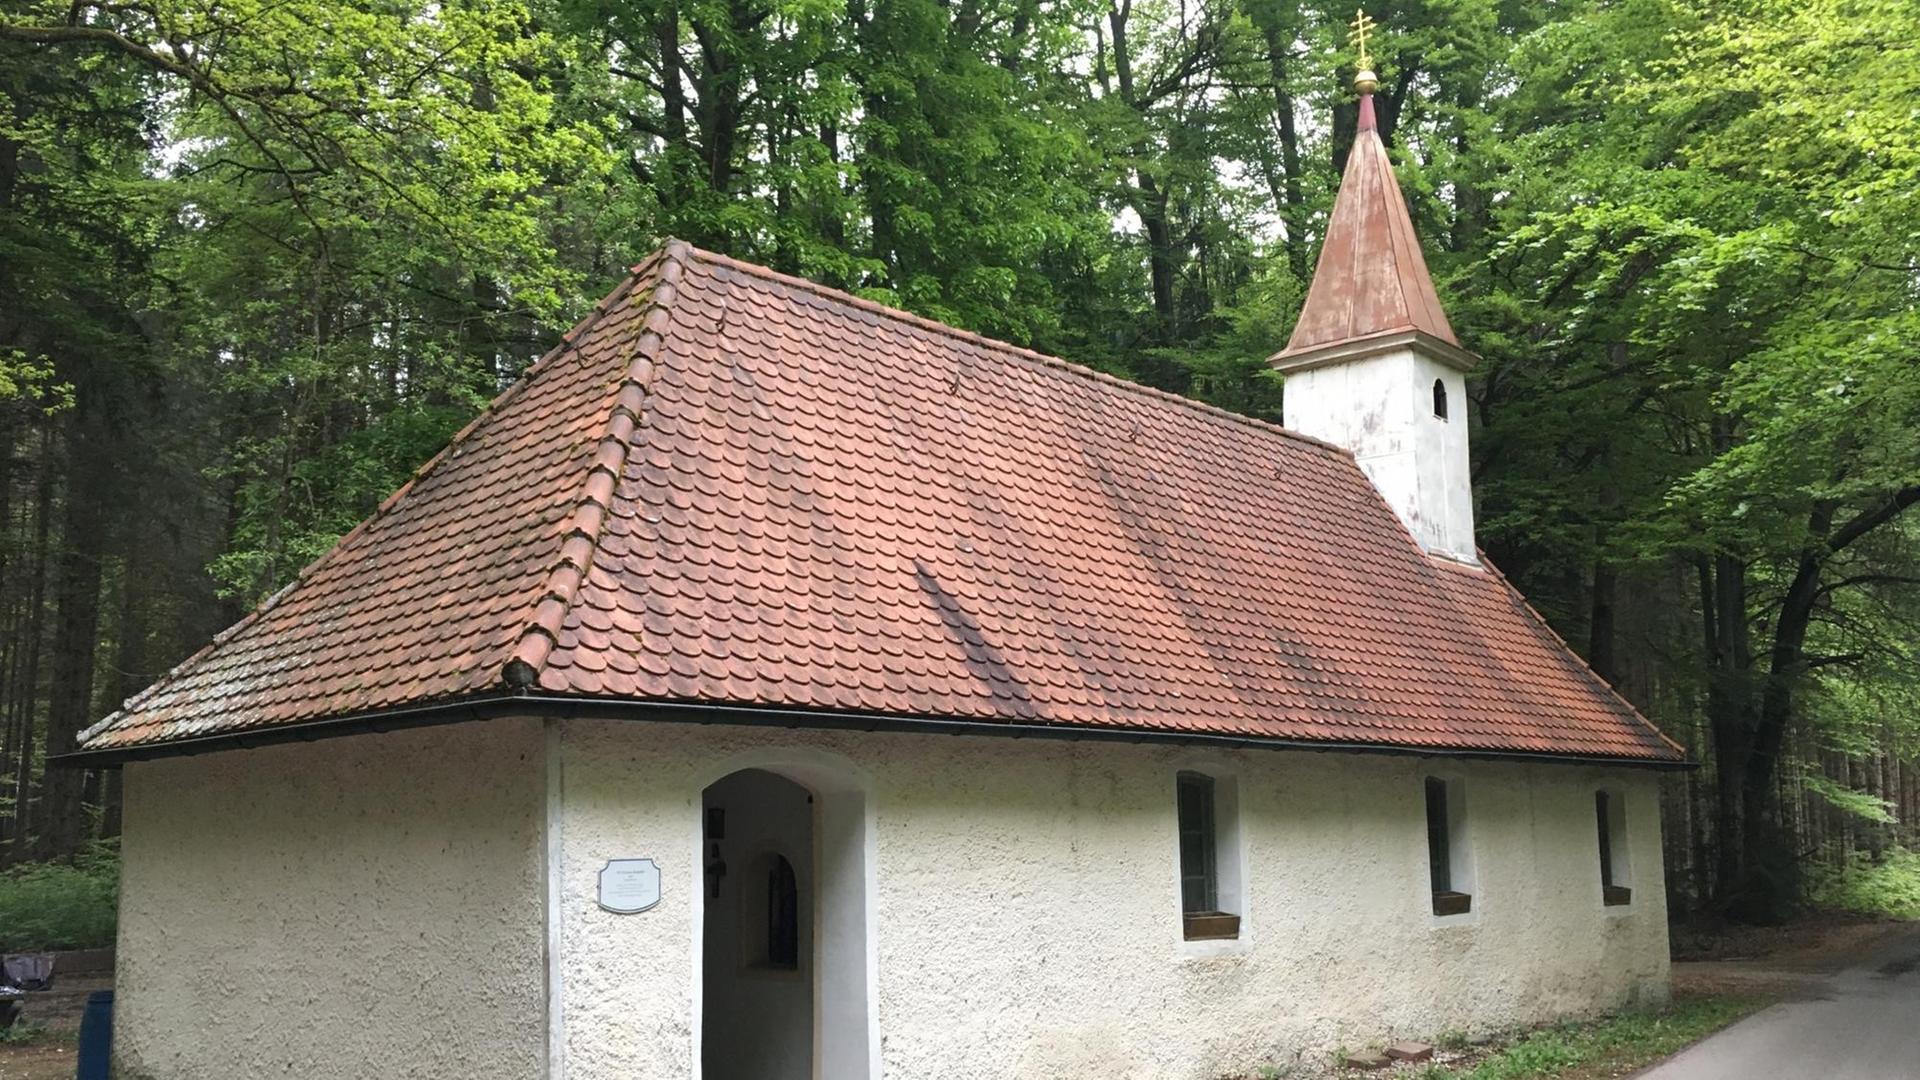 Die St. Corona-Kapelle im bayerischen Sauerlach-Arget: Eine schlichte, weiß verputzte Kapelle mit rotem Ziegeldach und einem kleinen Turm steht im Wald